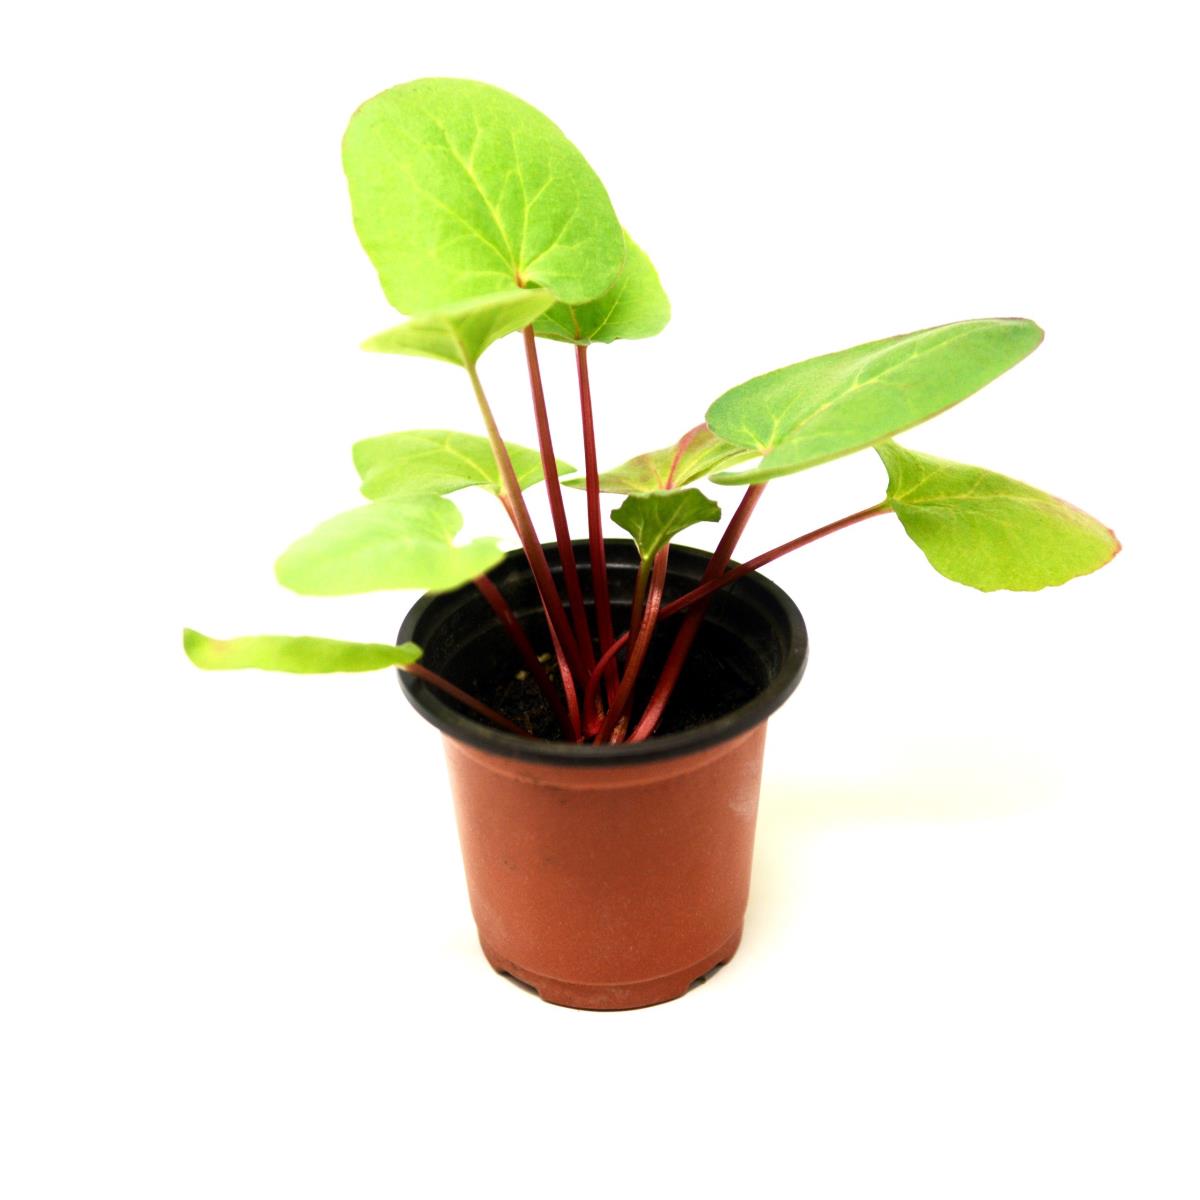 Rhubarb - Live Plant